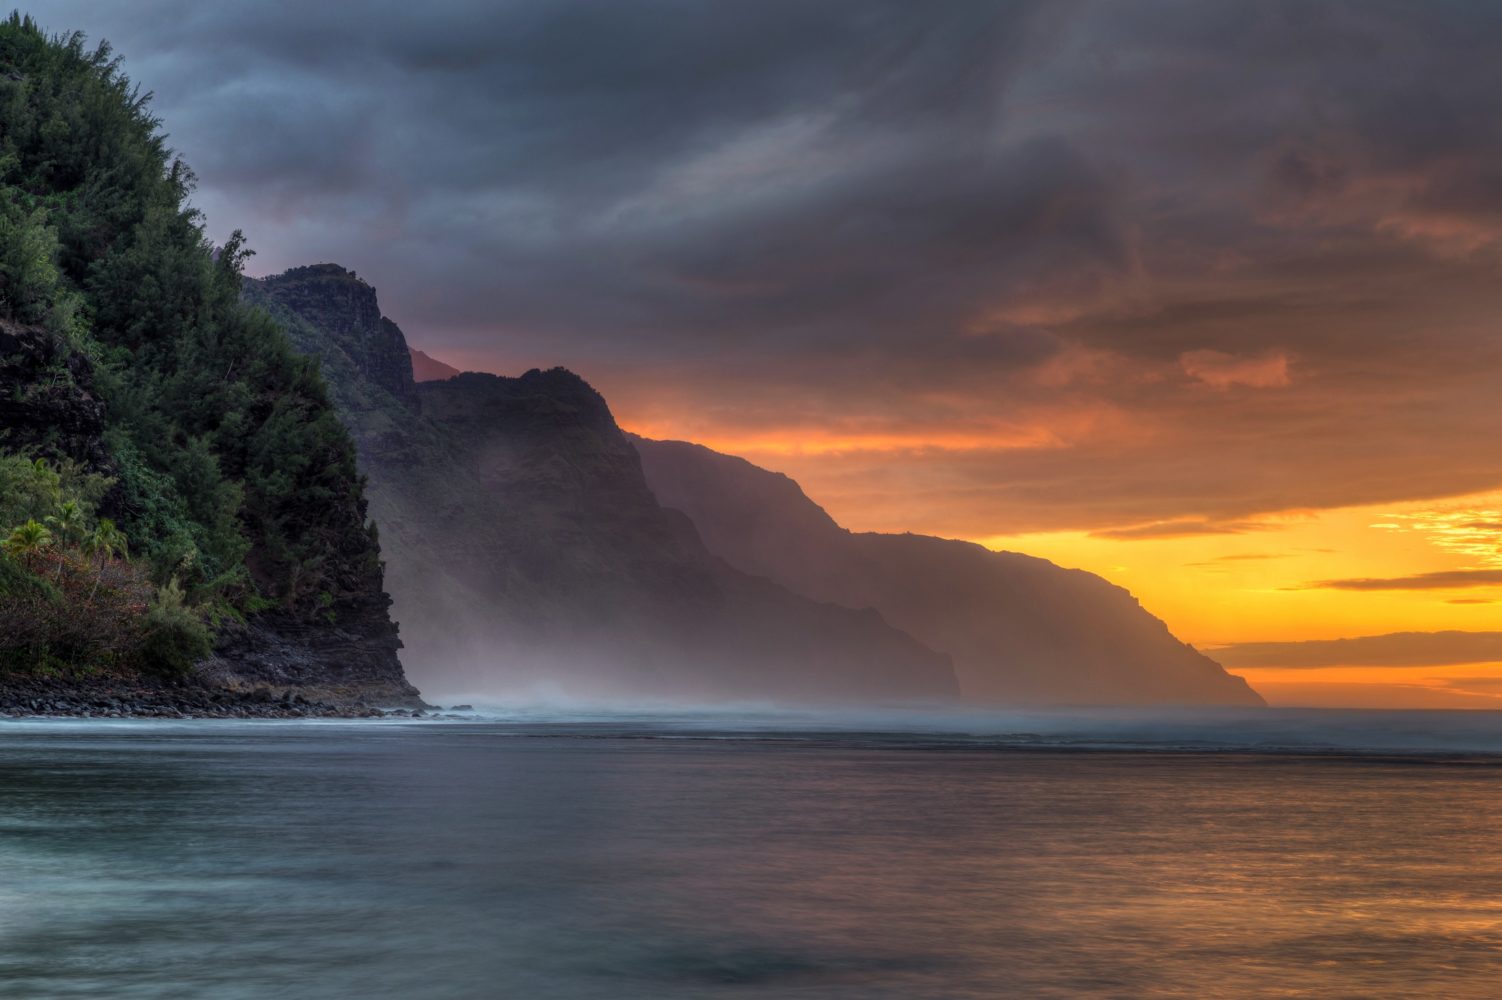 Hawaii Coastline and Sunset